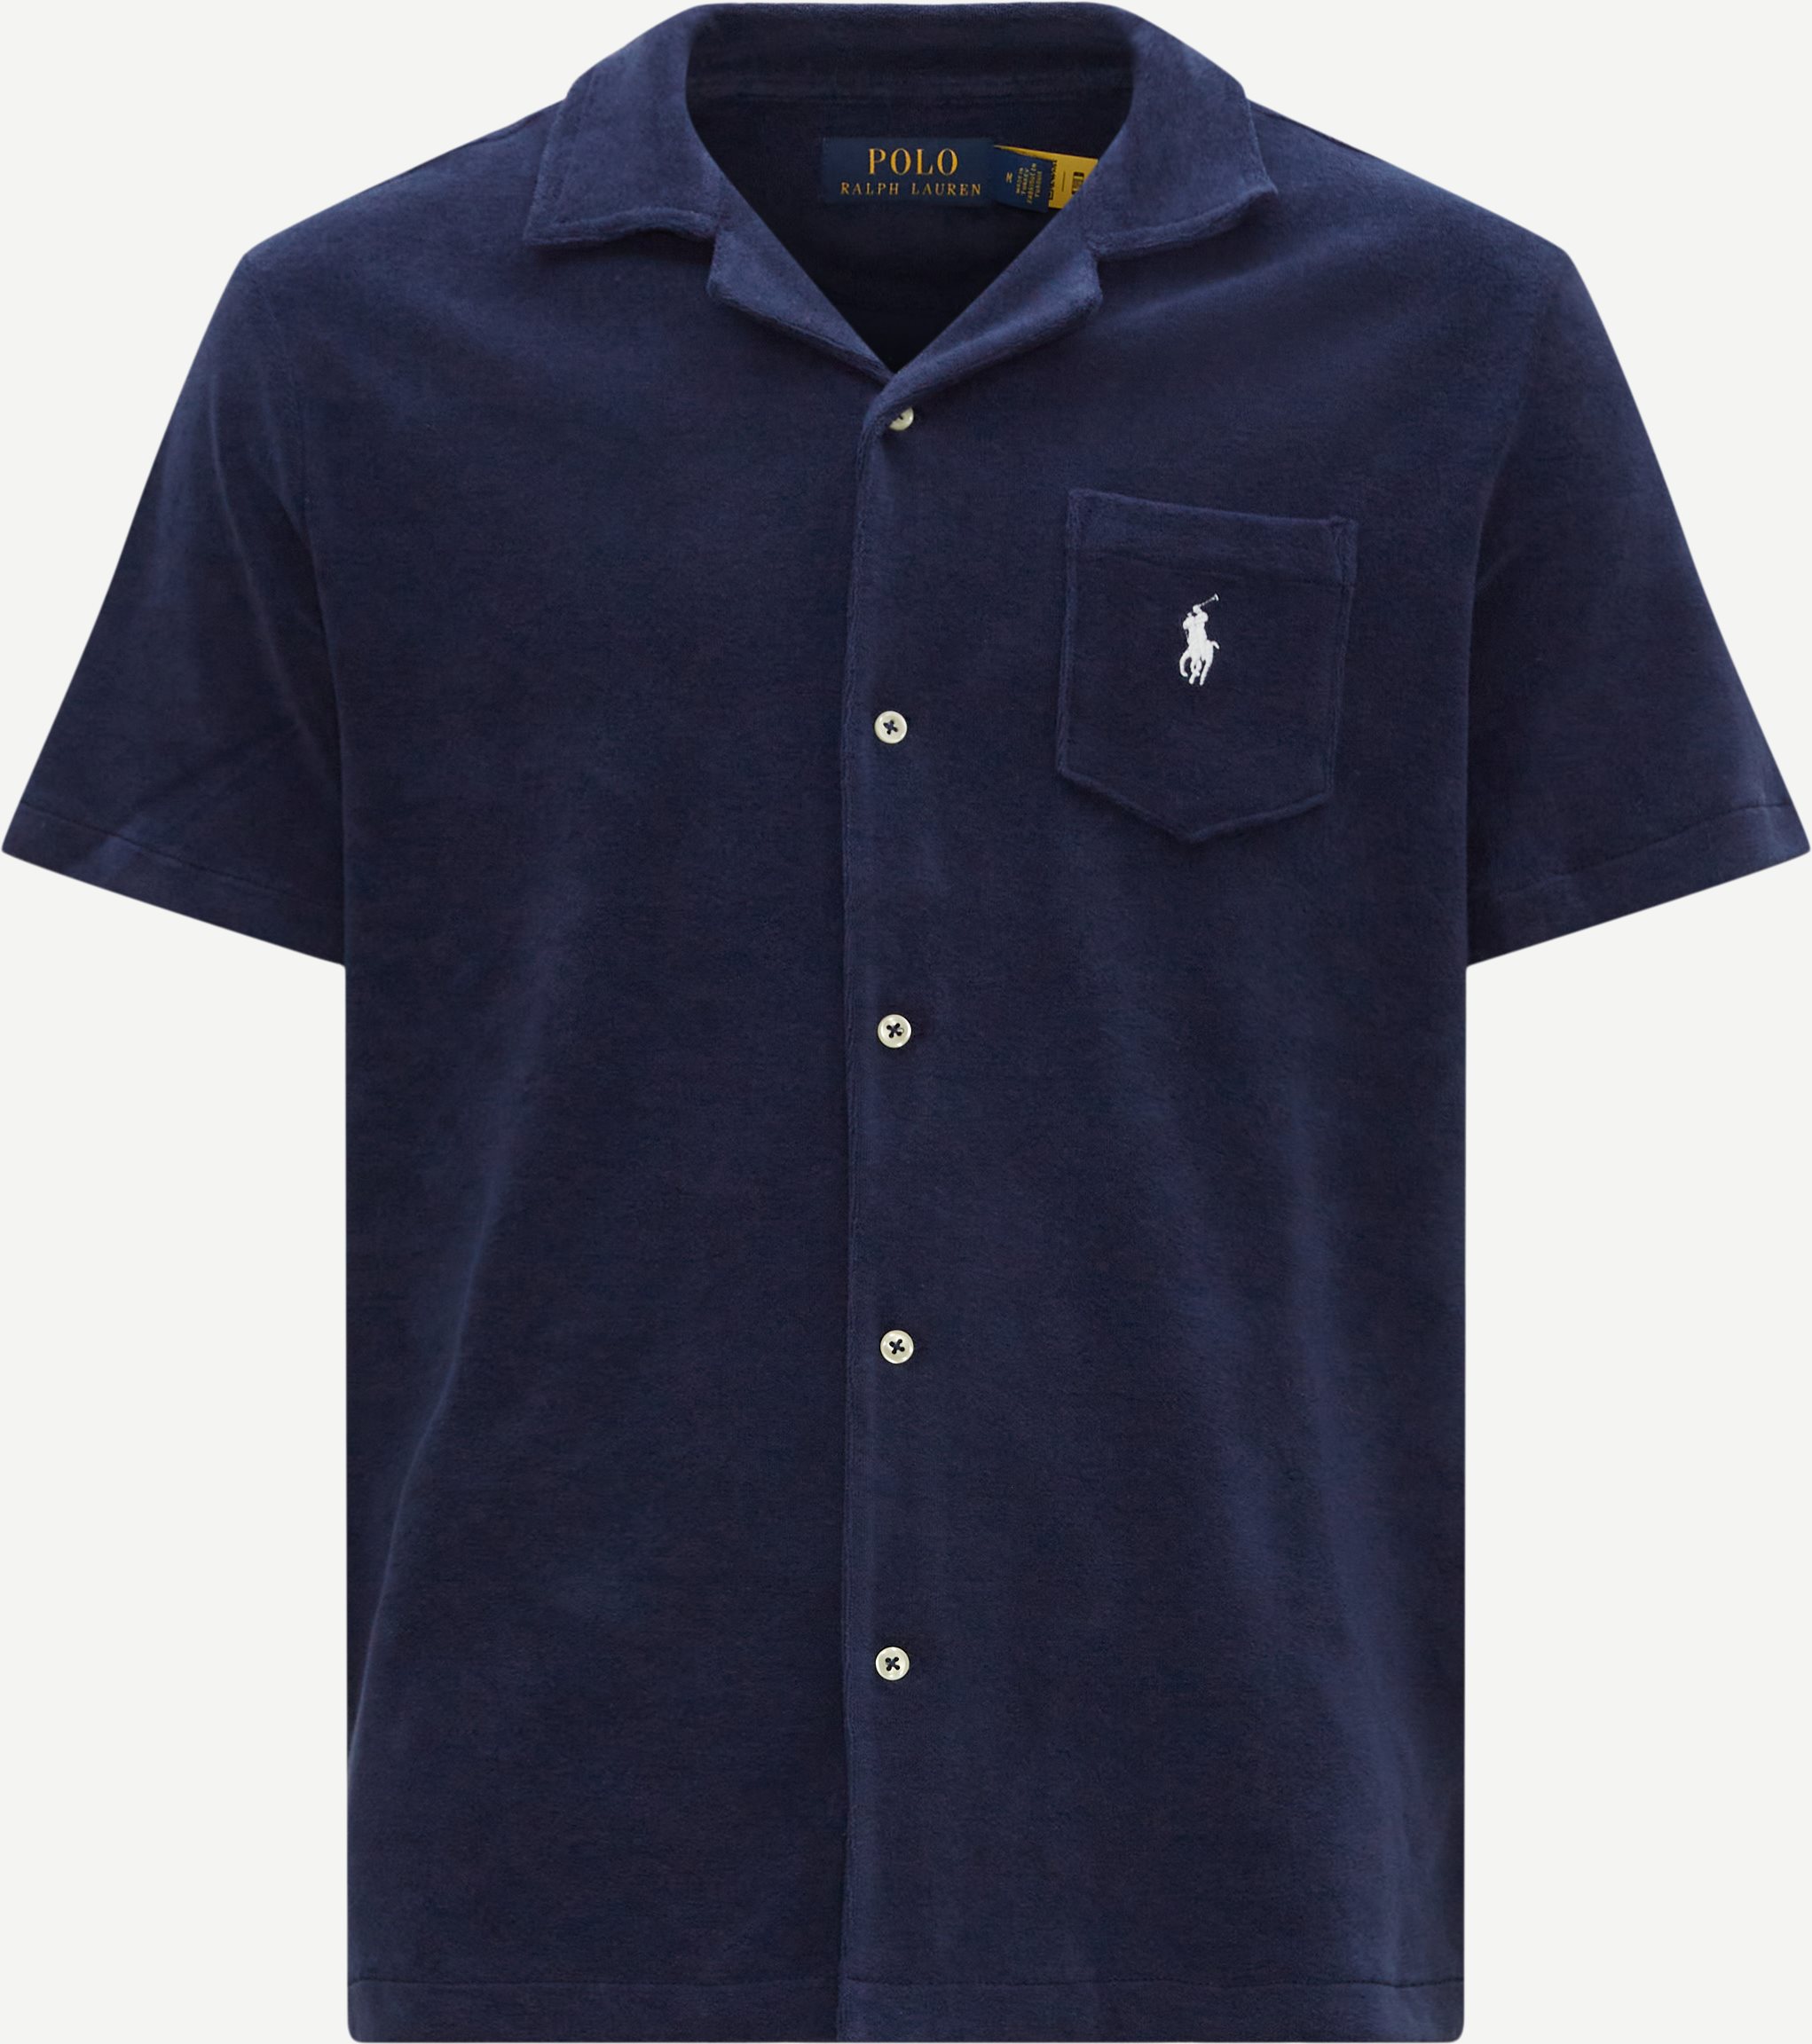 Polo Ralph Lauren Kortærmede skjorter 710899170 Blå